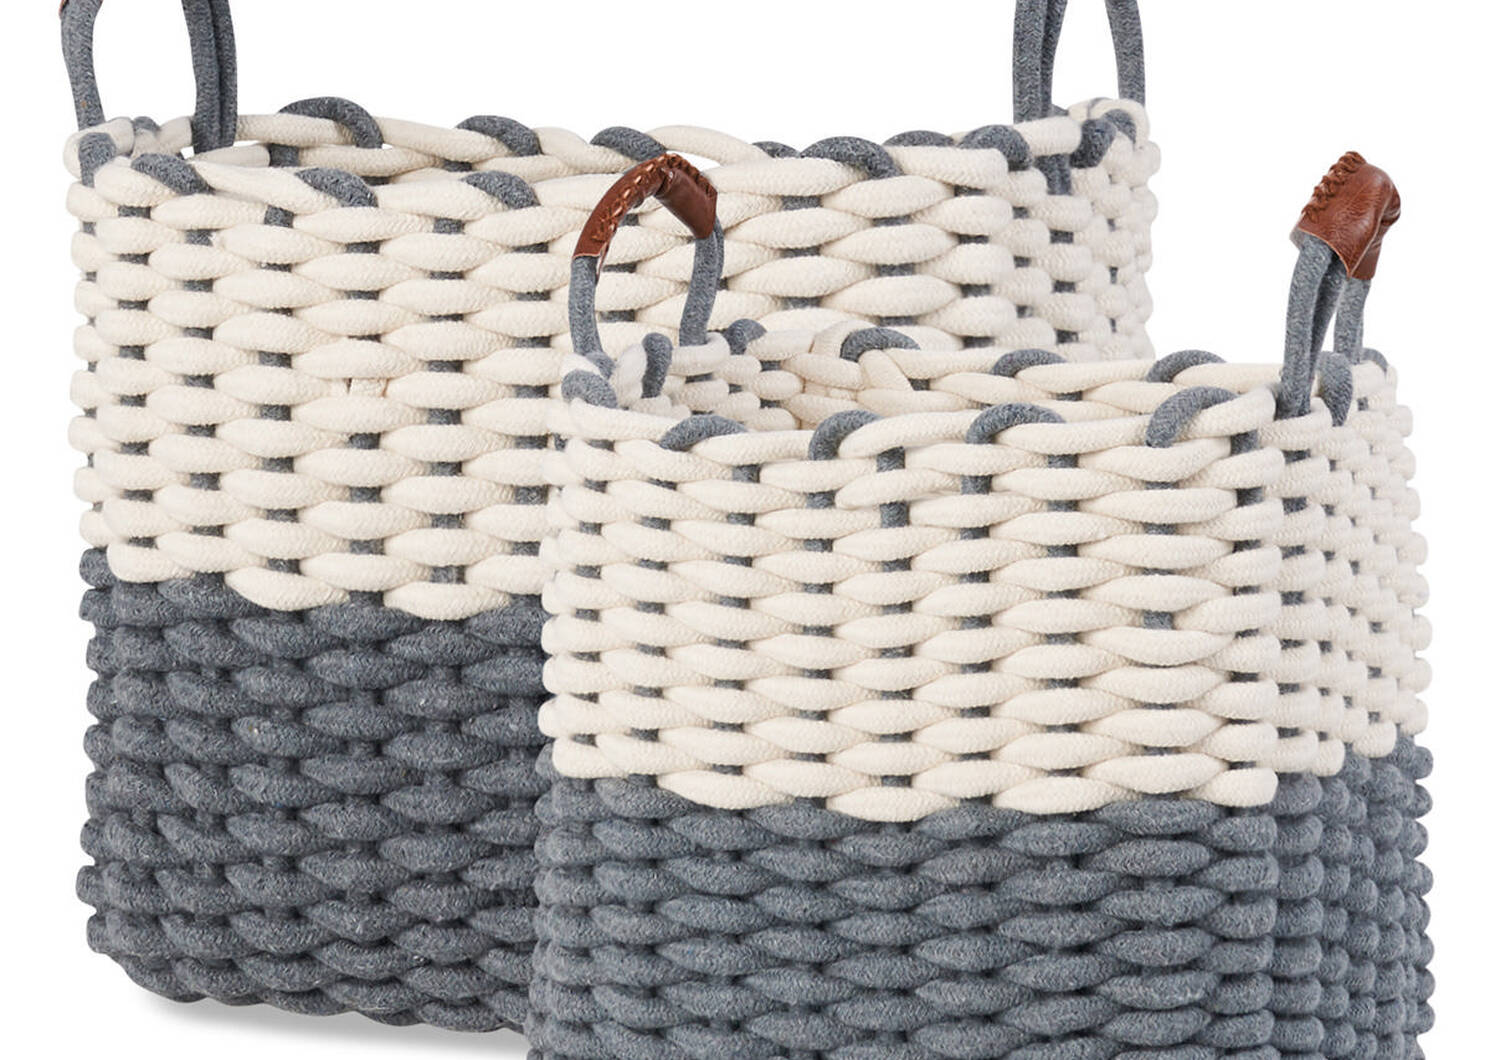 Corde Baskets - Natural/Grey